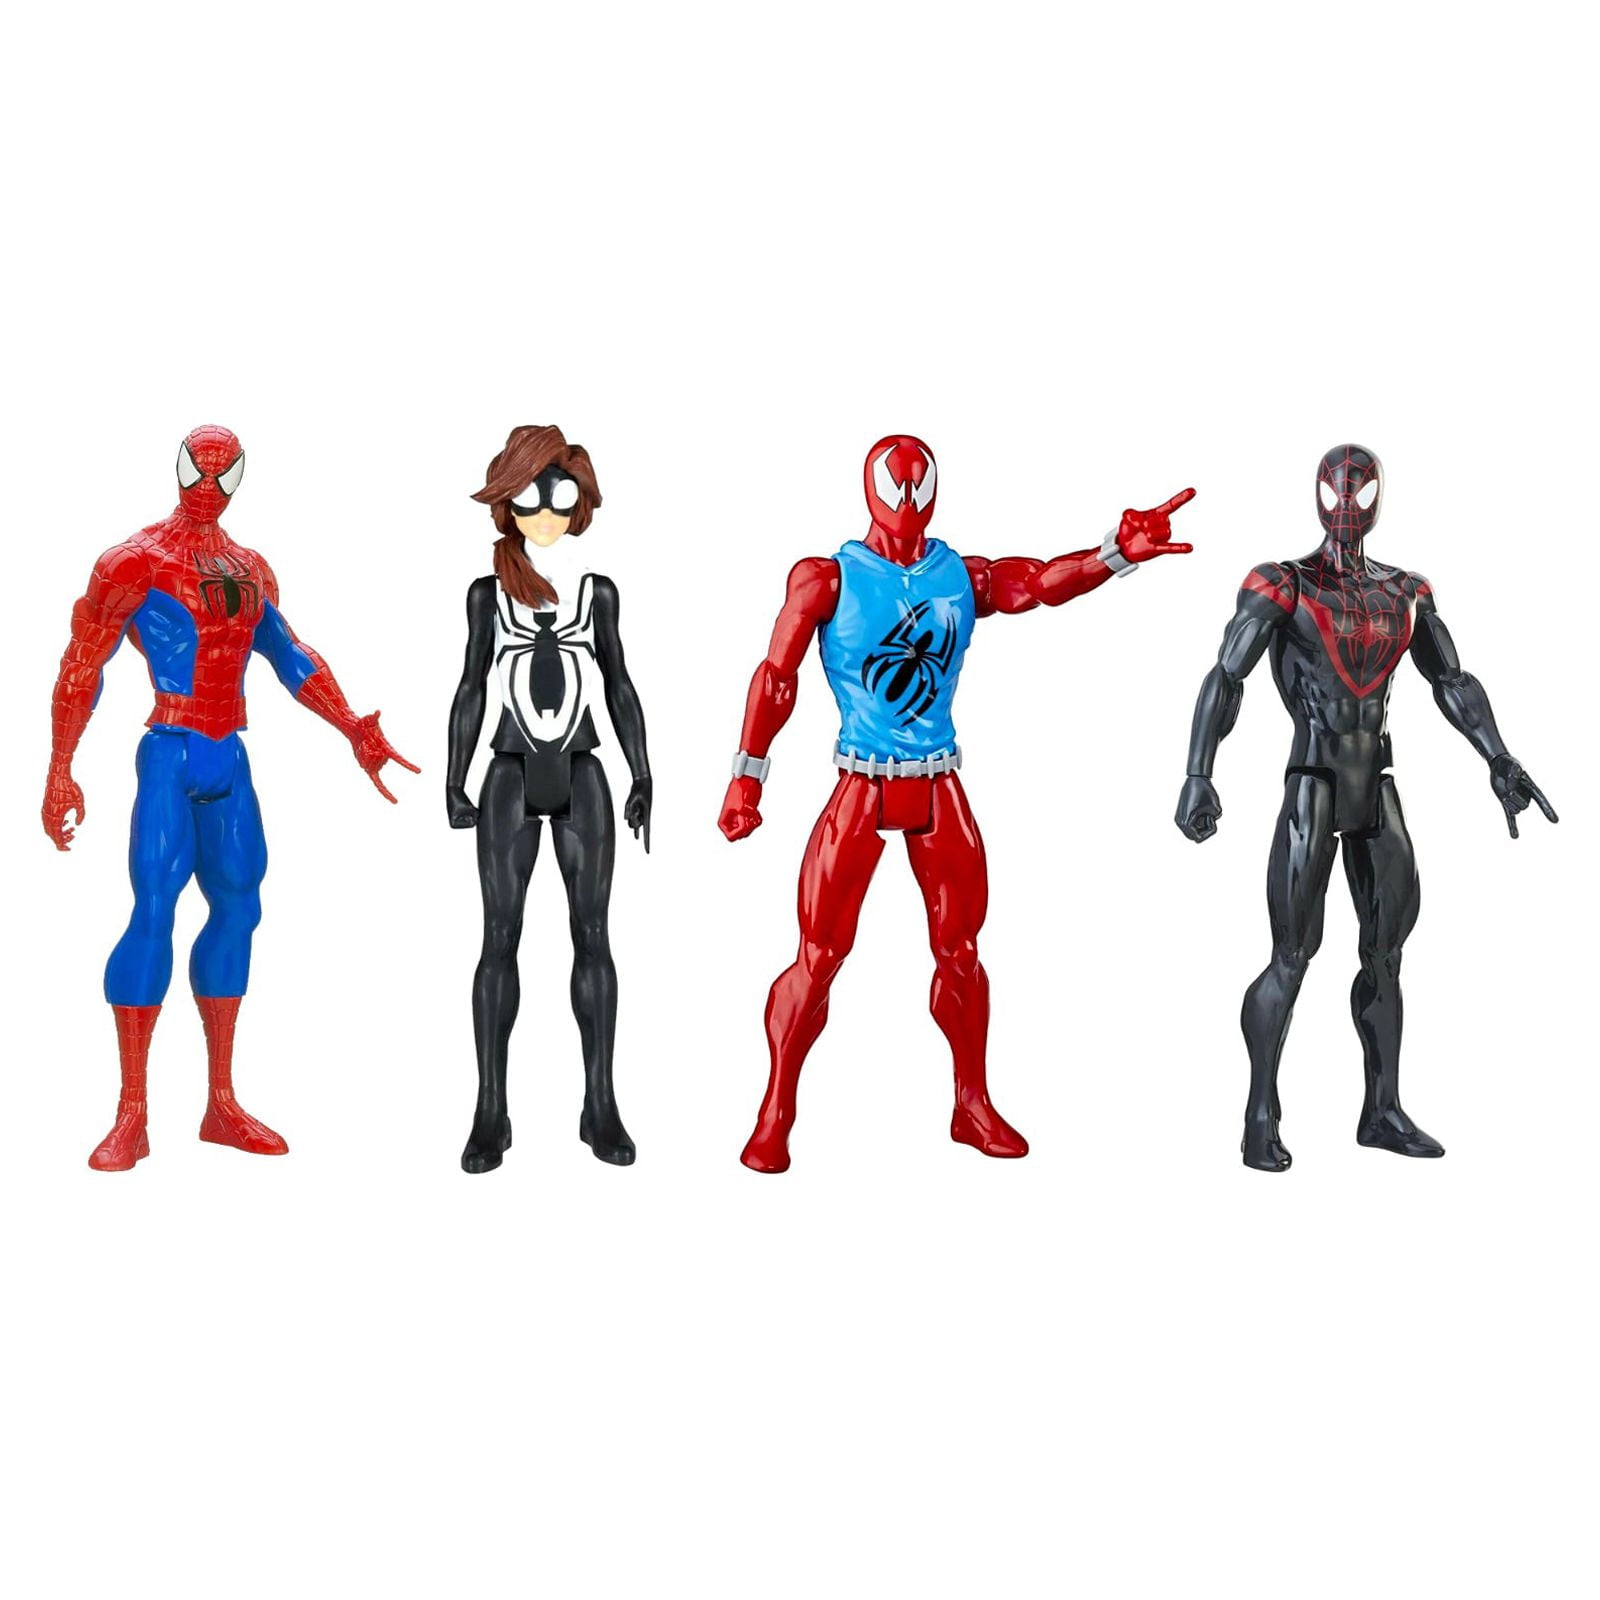 Marvel Avengers Ultimate Protectors Pack, 6 pulgadas, a escala, 8 figuras  de acción con accesorios, juguetes de superhéroe, juguetes para niños y